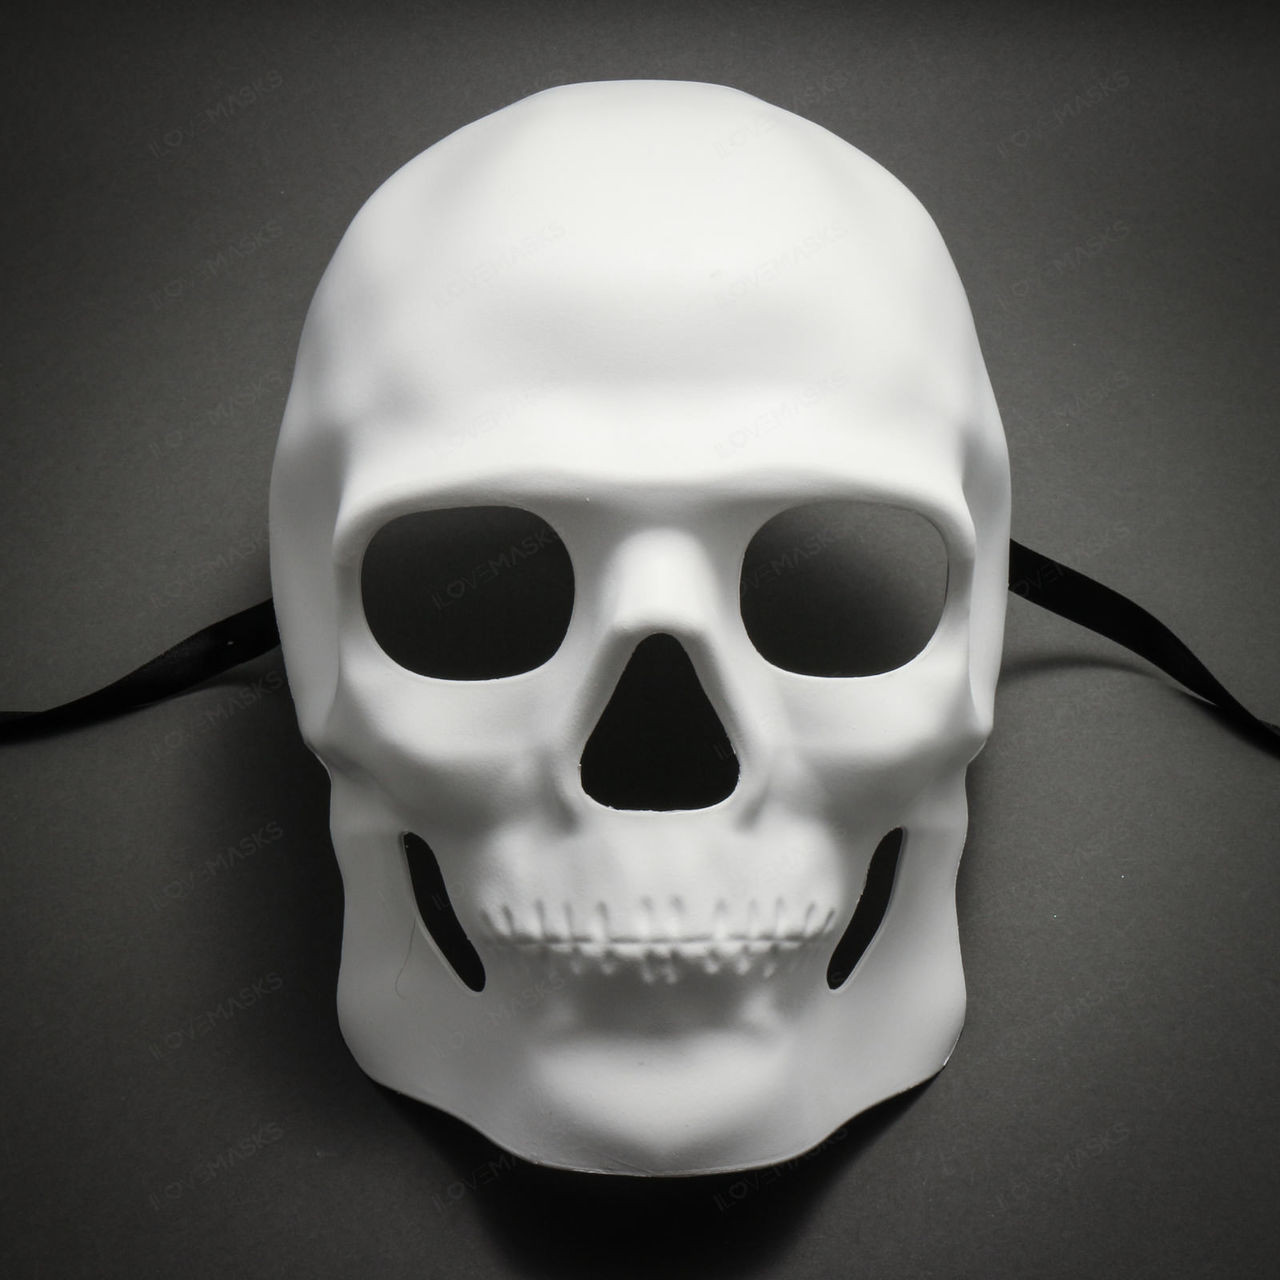  Skull  Halloween  Masquerade Full Face Mask  White